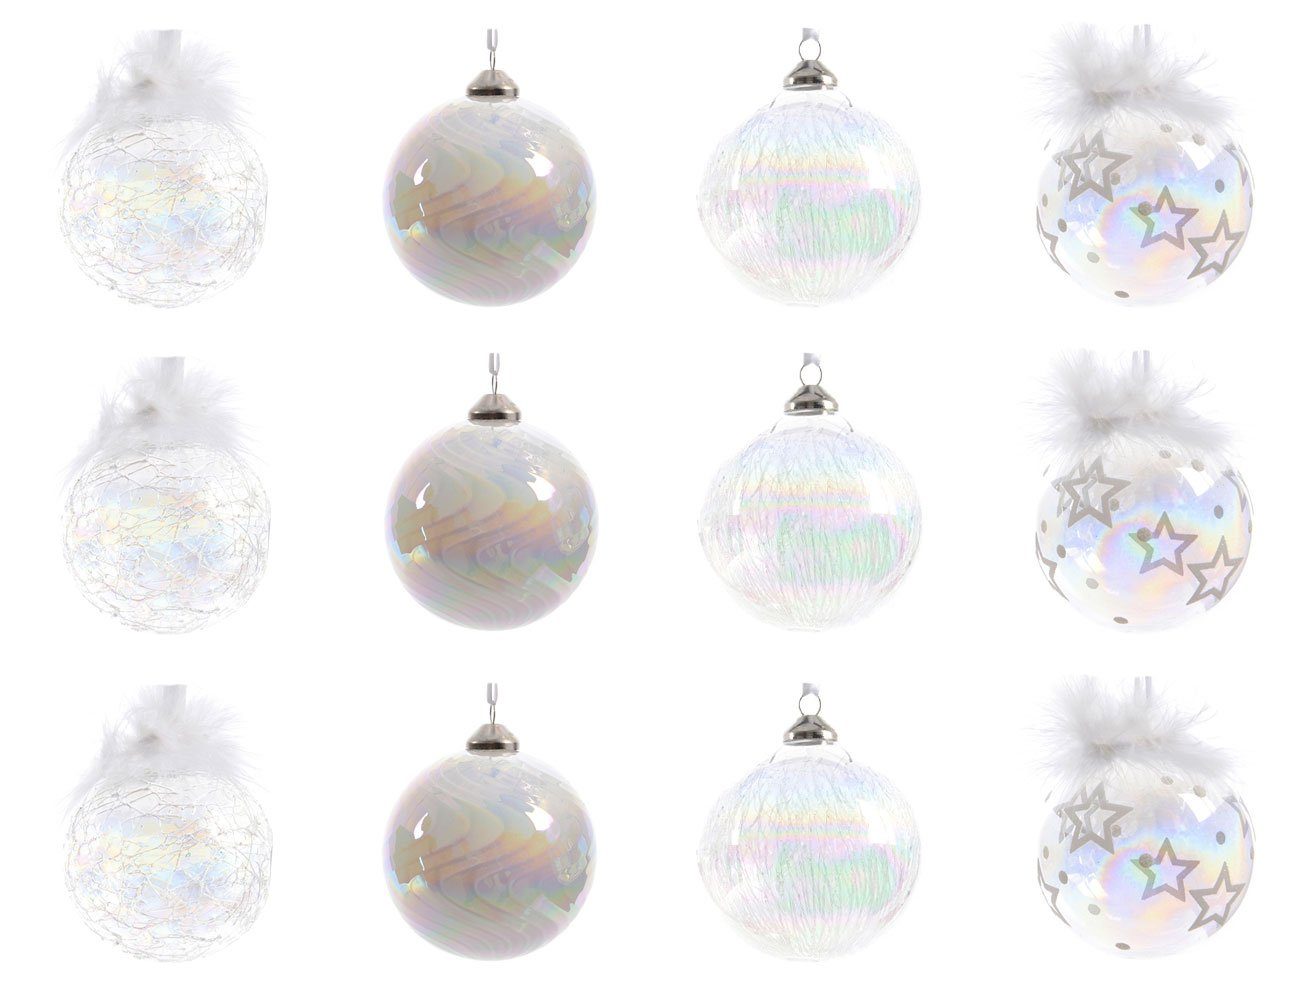 Decoris season decorations Weihnachtsbaumkugel, Weihnachtskugeln Glas mit Motiv 8cm klar / weiß / irisierend, 12er Set